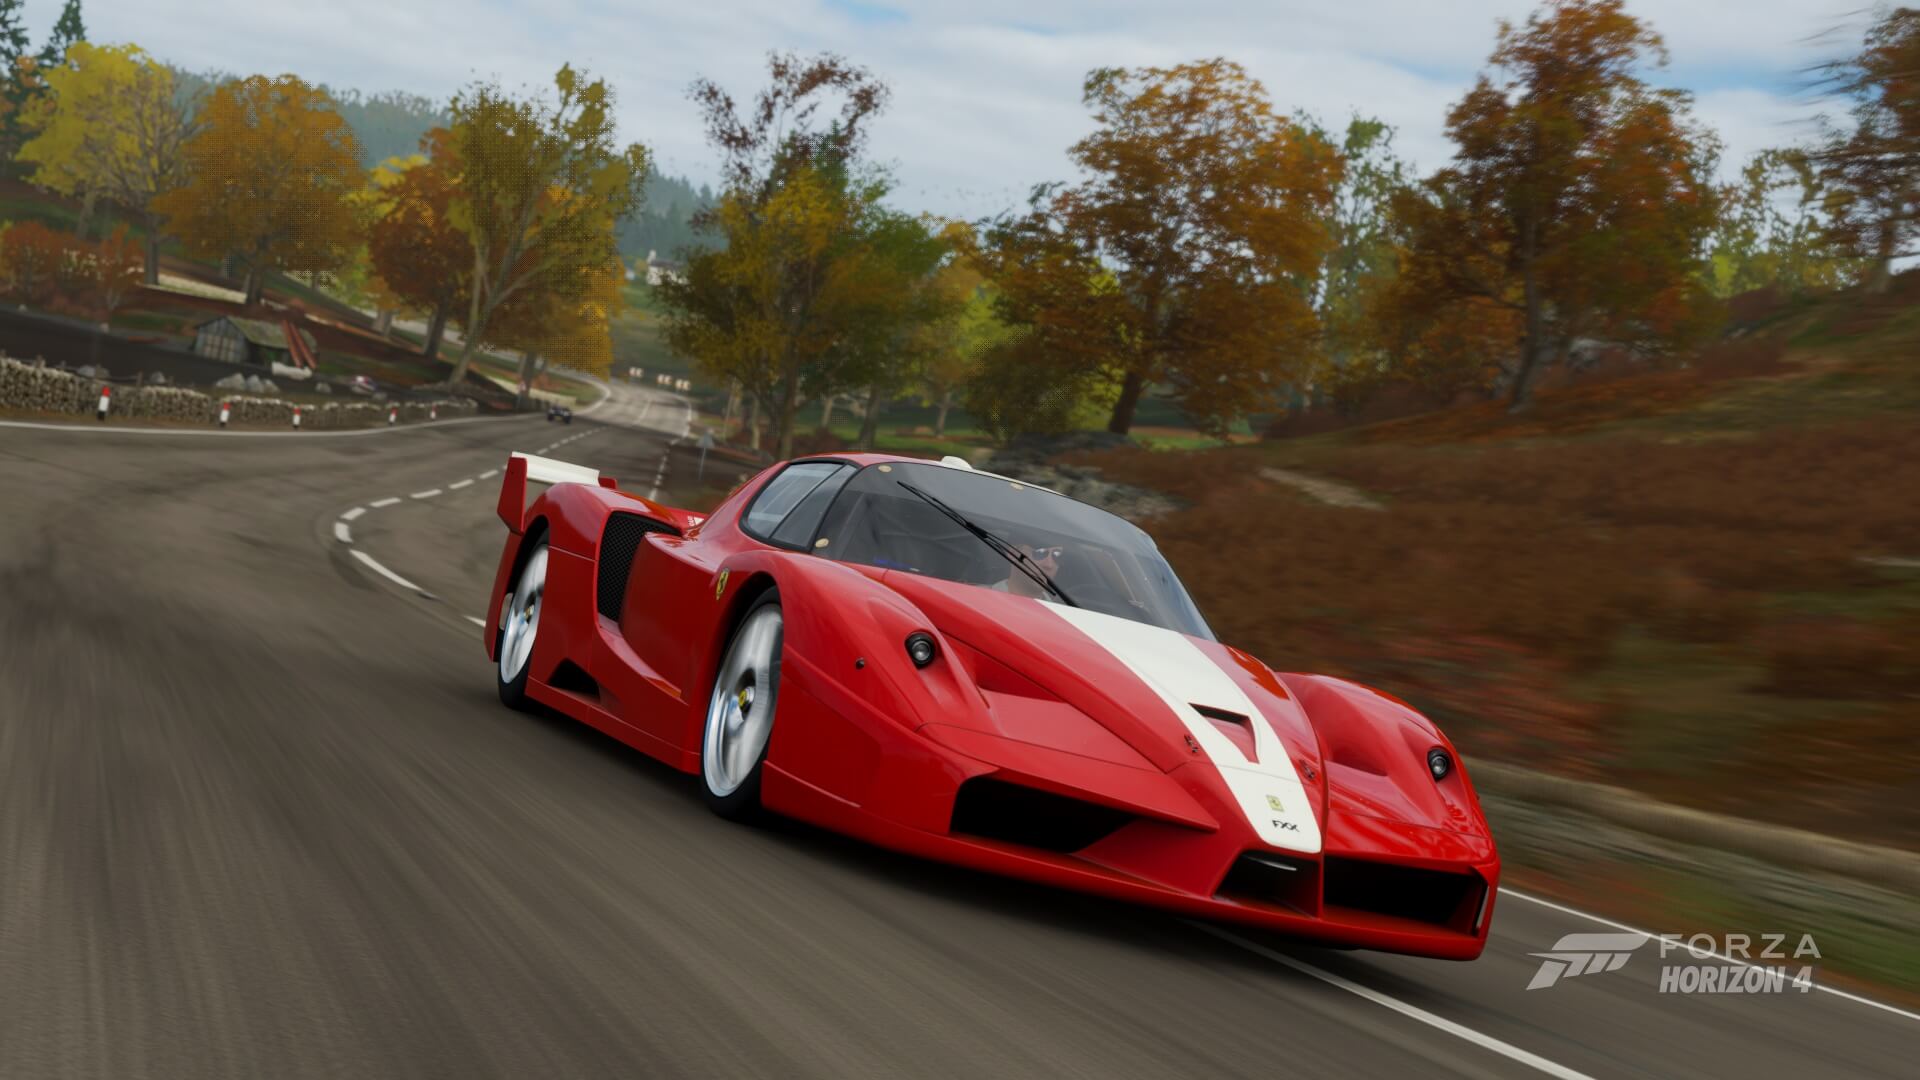 Ferrari forza horizon. Forza Horizon 4 Ferrari FXX. Ferrari FXX Horizon 4. Forza Horizon 4 Феррари 250. Enzo Ferrari Forza Horizon 4.